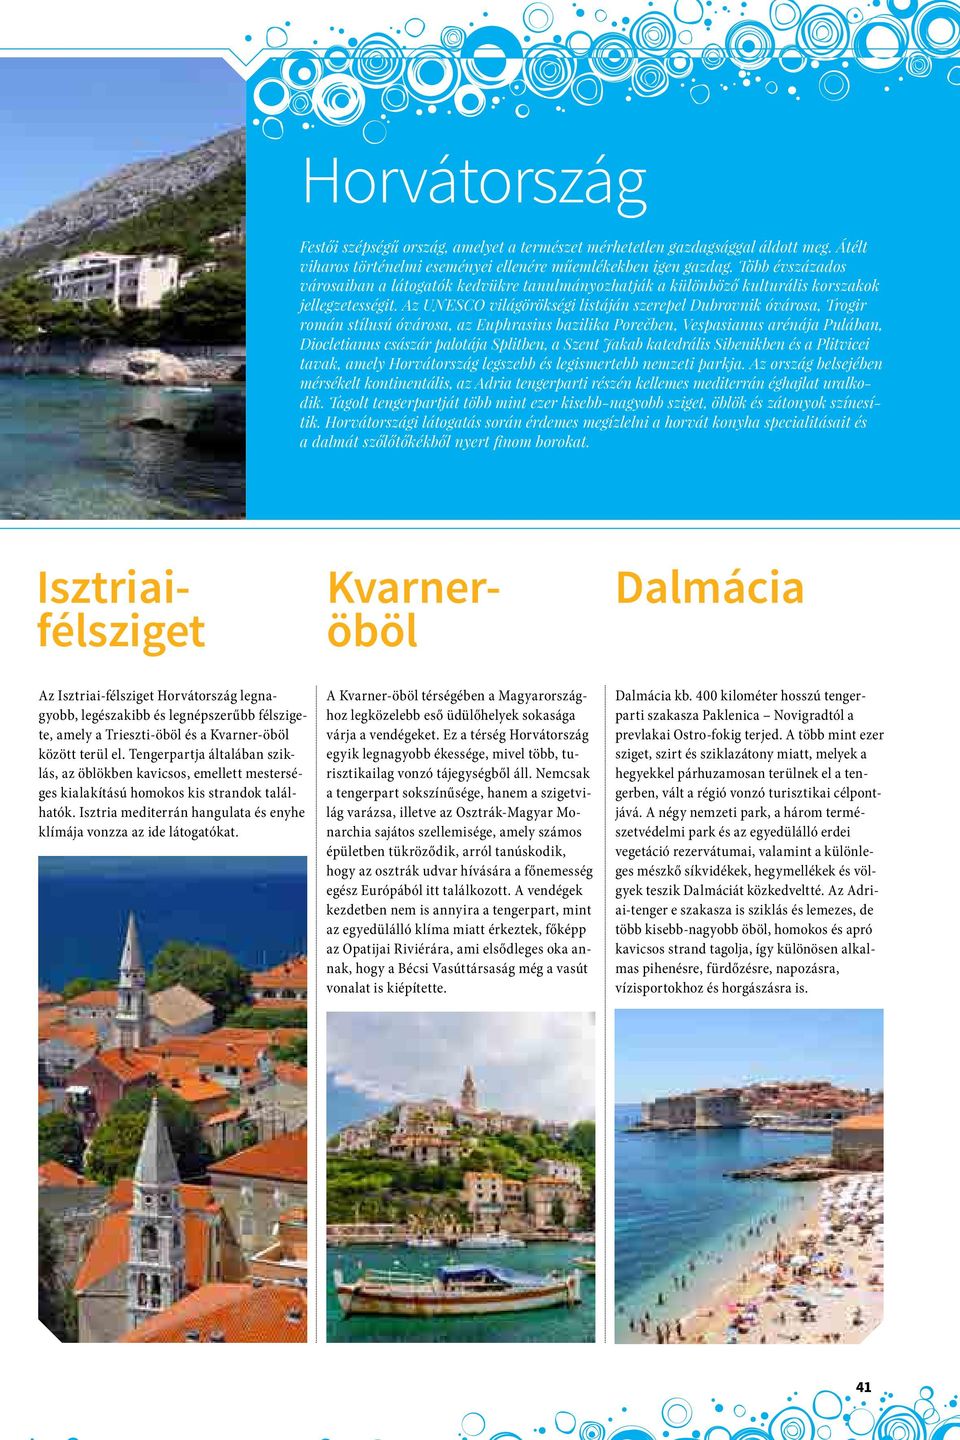 Az UNESCO világörökségi listáján szerepel Dubrovnik óvárosa, Trogir román stílusú óvárosa, az Euphrasius bazilika Porečben, Vespasianus arénája Pulában, Diocletianus császár palotája Splitben, a